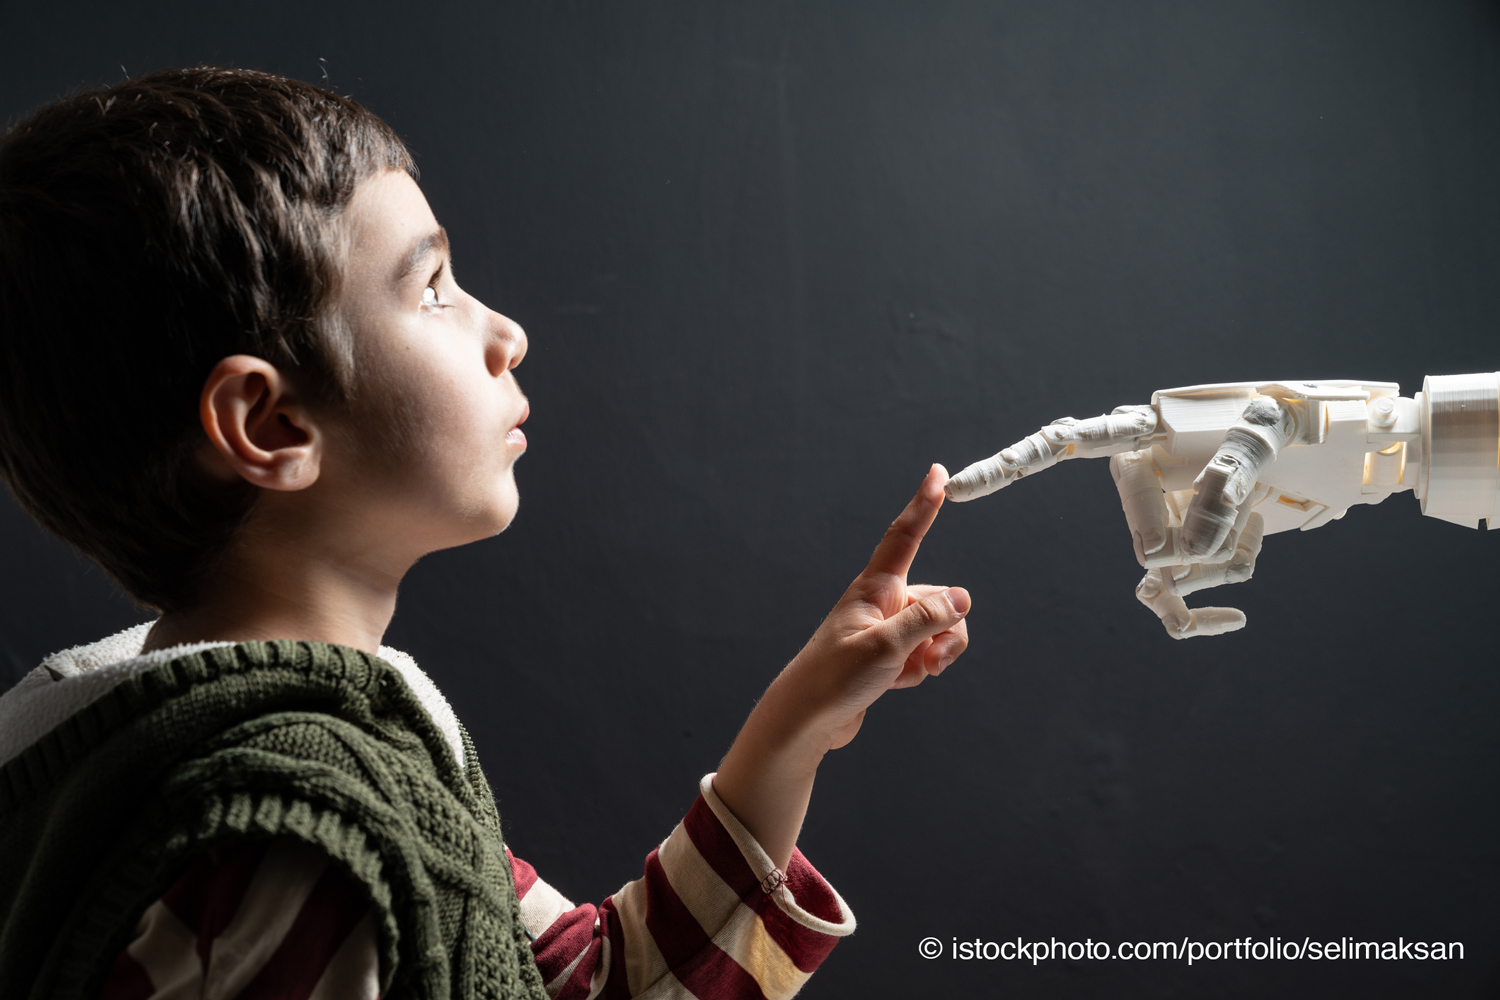 Ein Kinde berührt eine Roboterhand